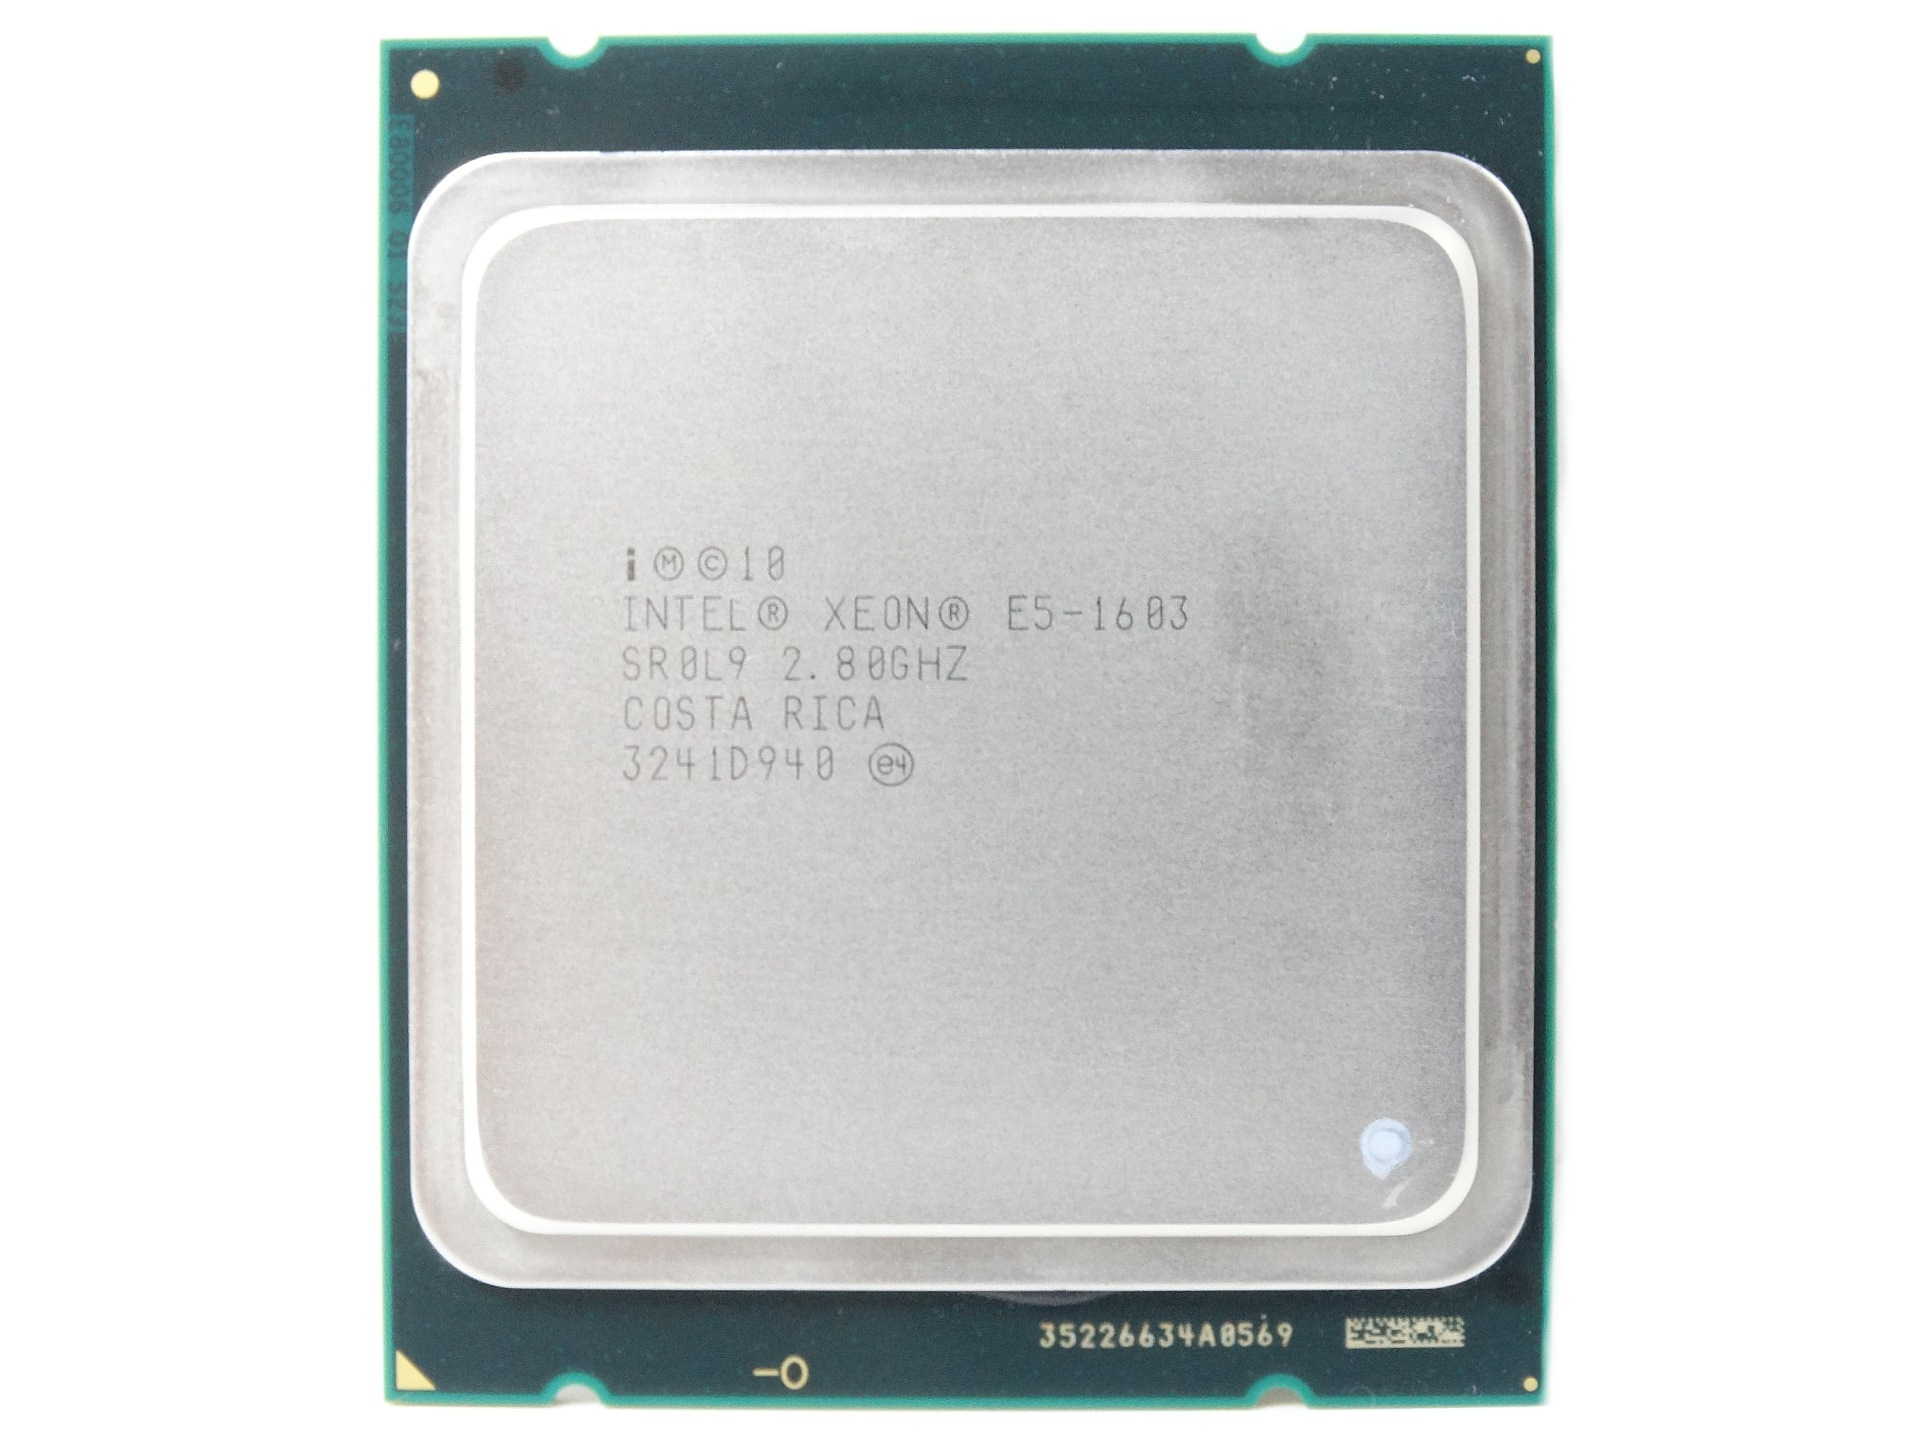 Intel Xeon E5-1603 2.8GHz Quad Core 10MB Cache LGA2011 CPU Processor (SR0L9)